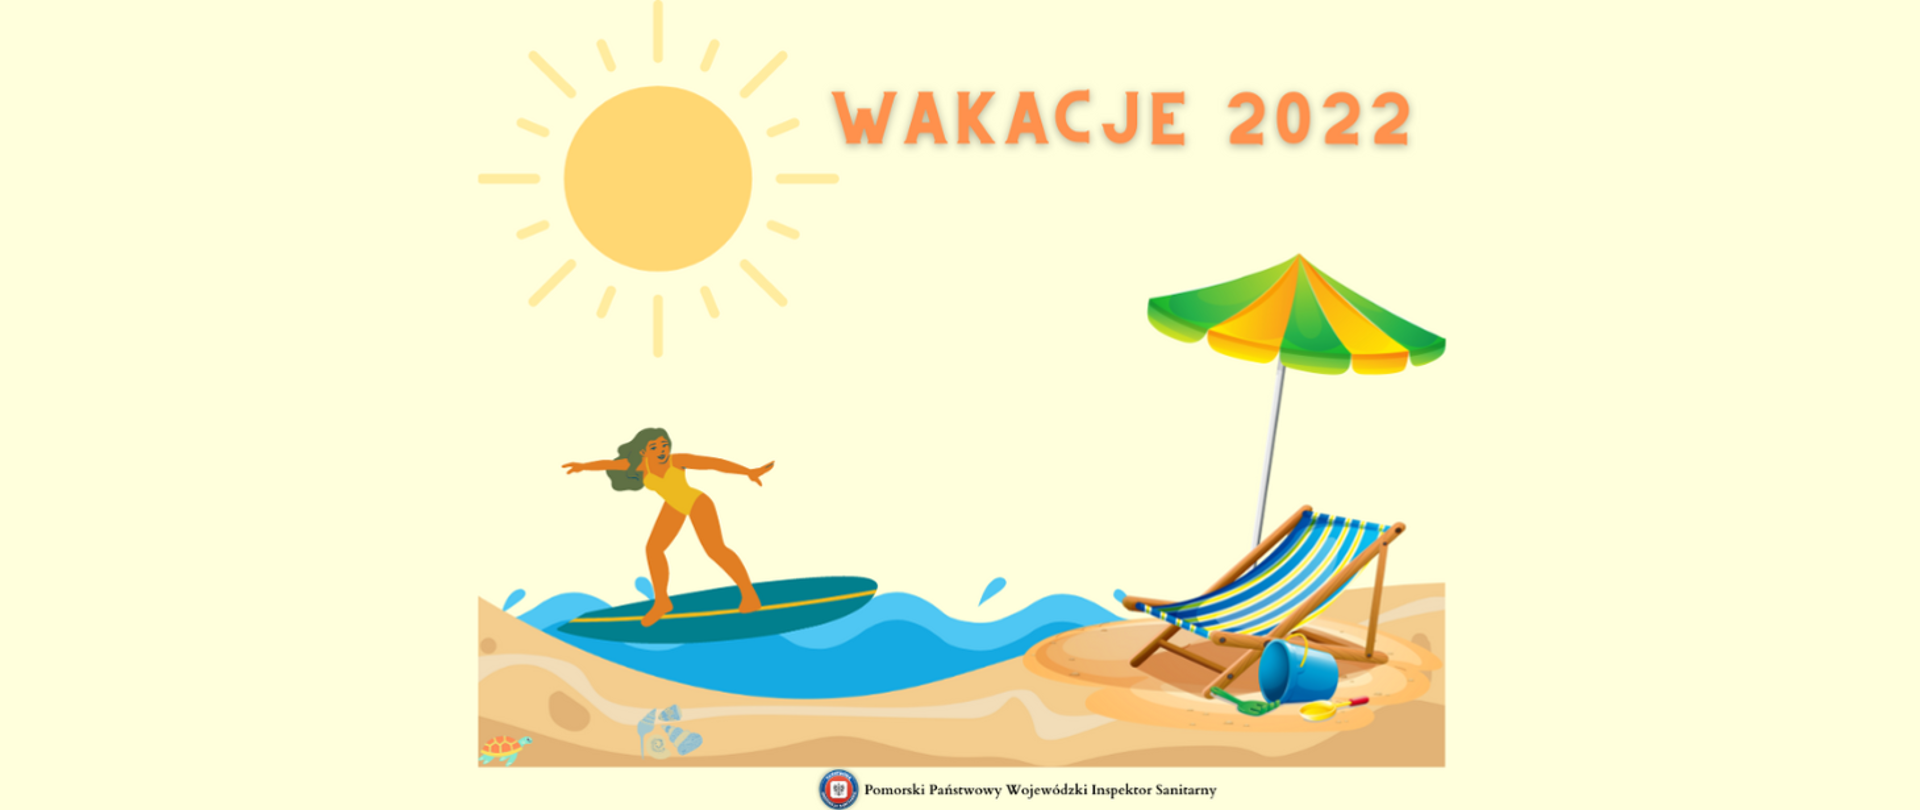 Grafika przedstawiająca dziewczynę pływającą na desce przy piaszczystej plaży oraz napis Wakacje 2022